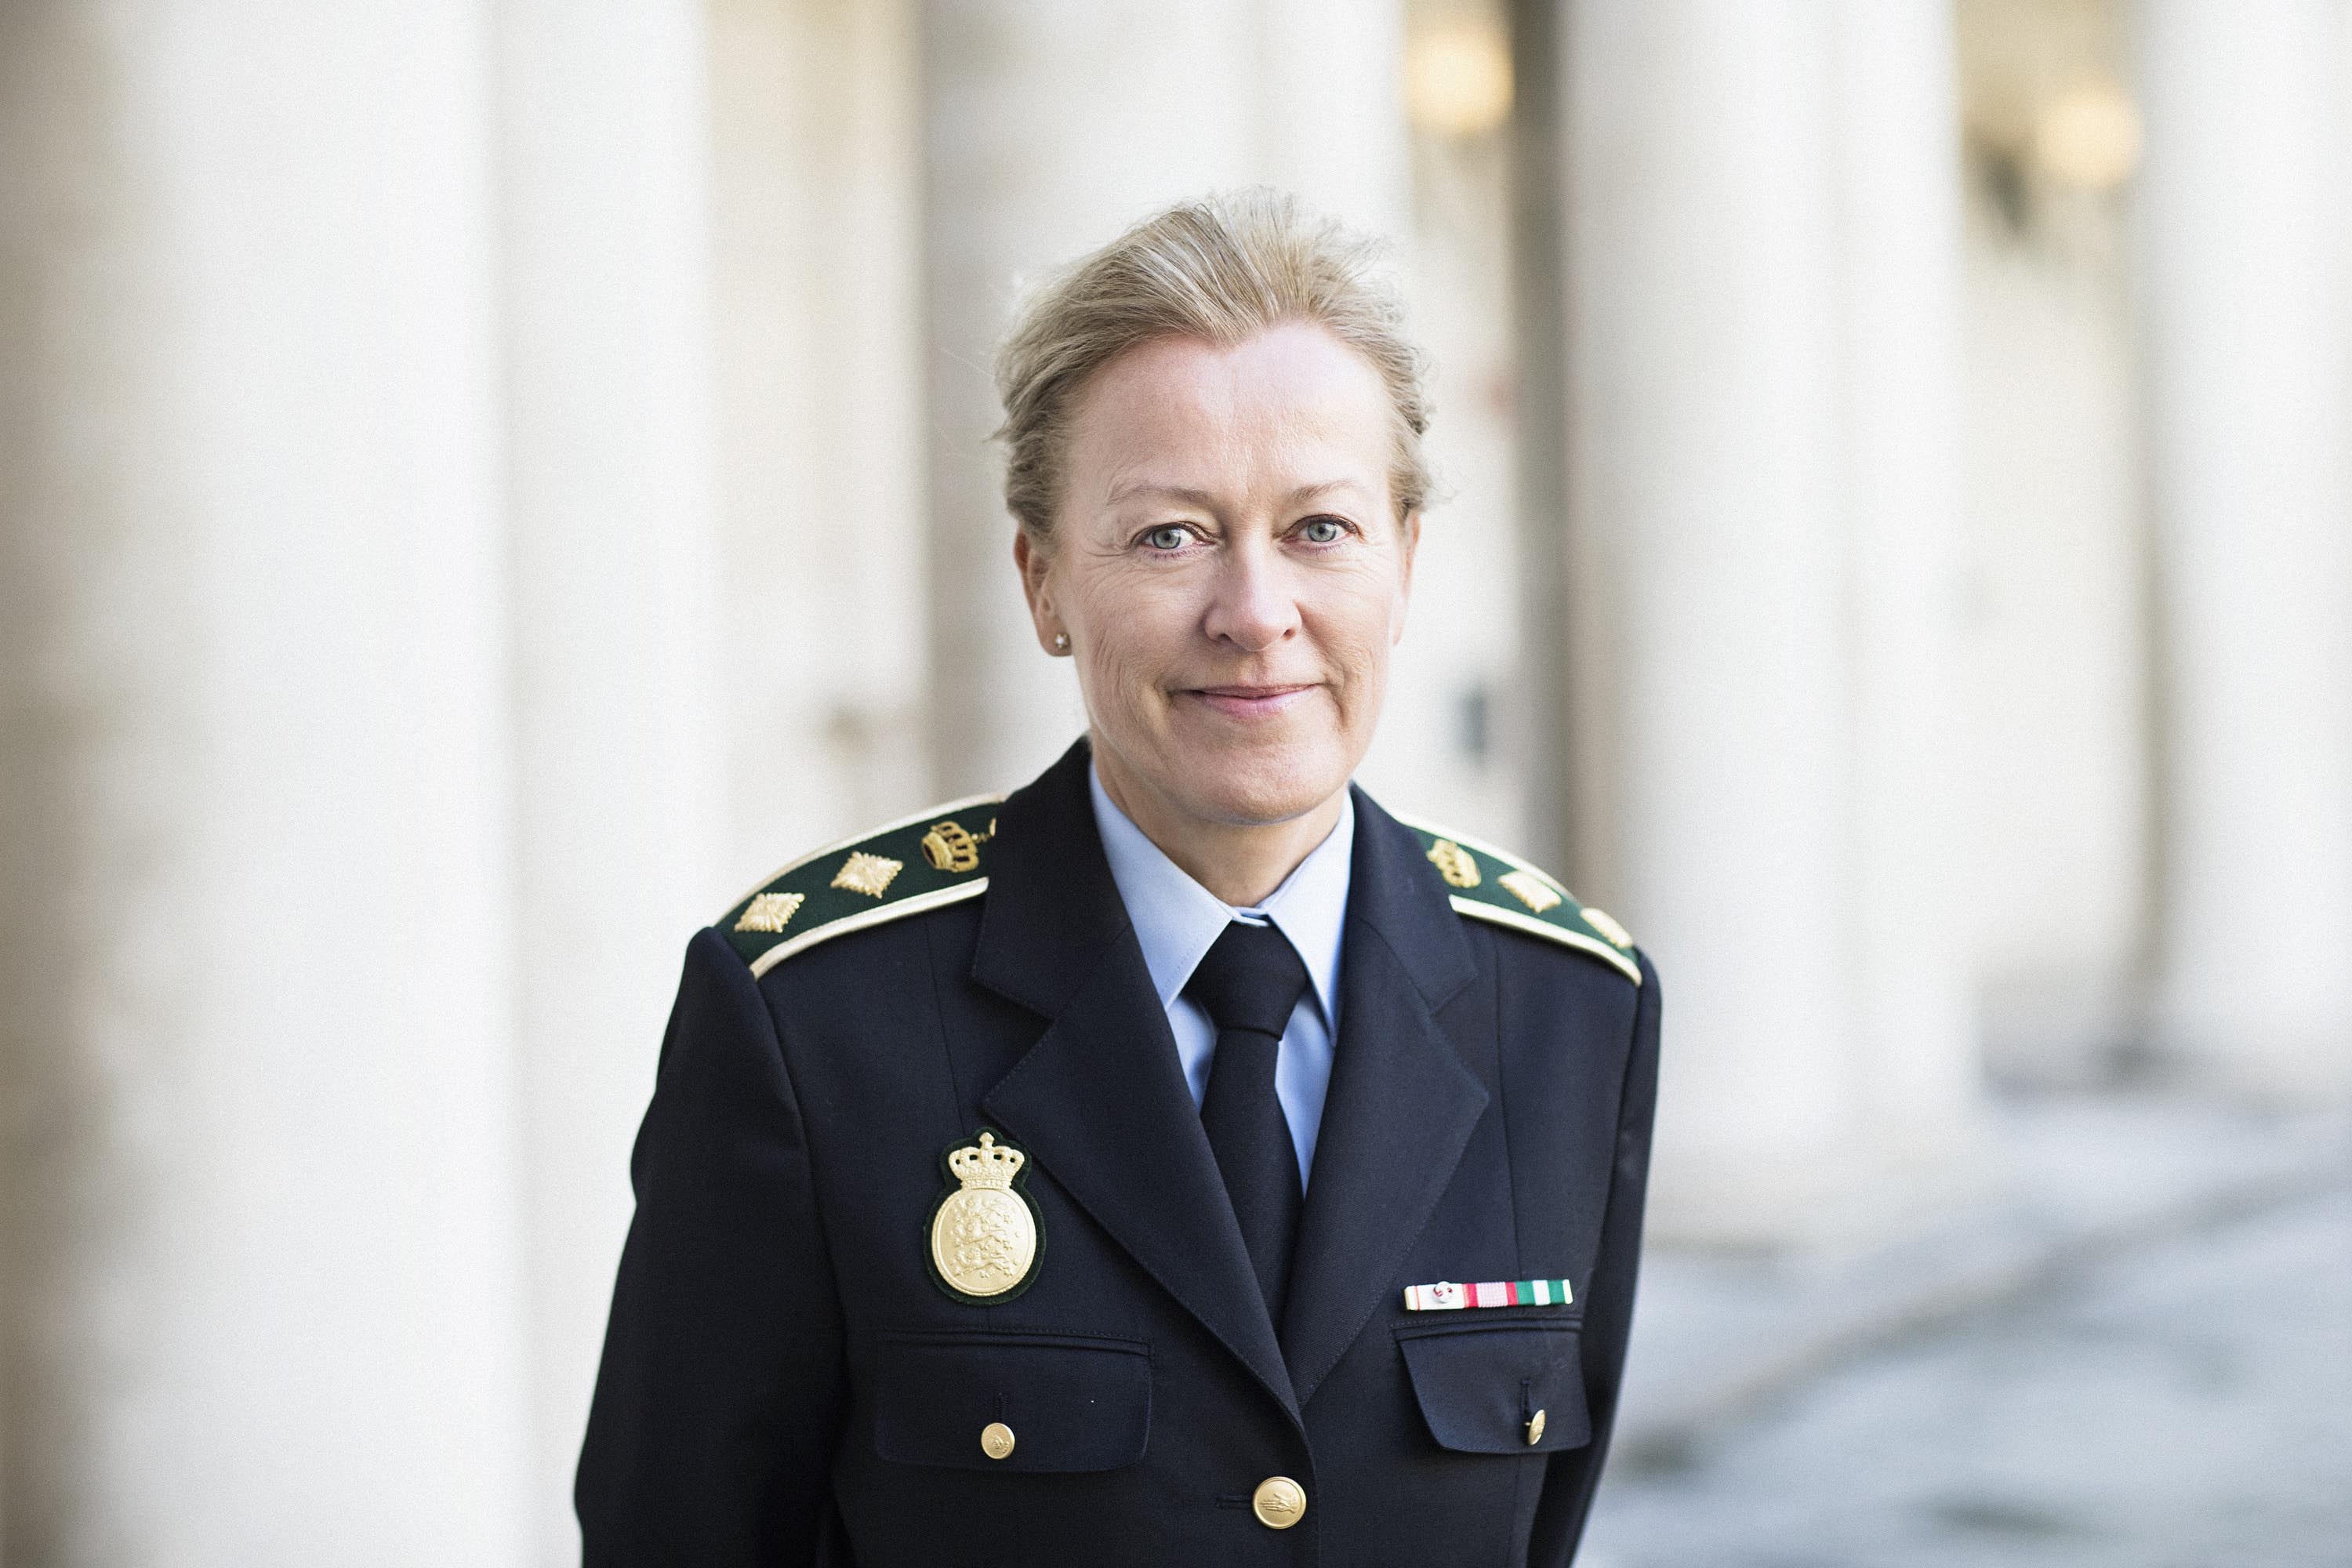 Politidirektør Helle Kyndesen, Midt- og Vestjyllands Politi